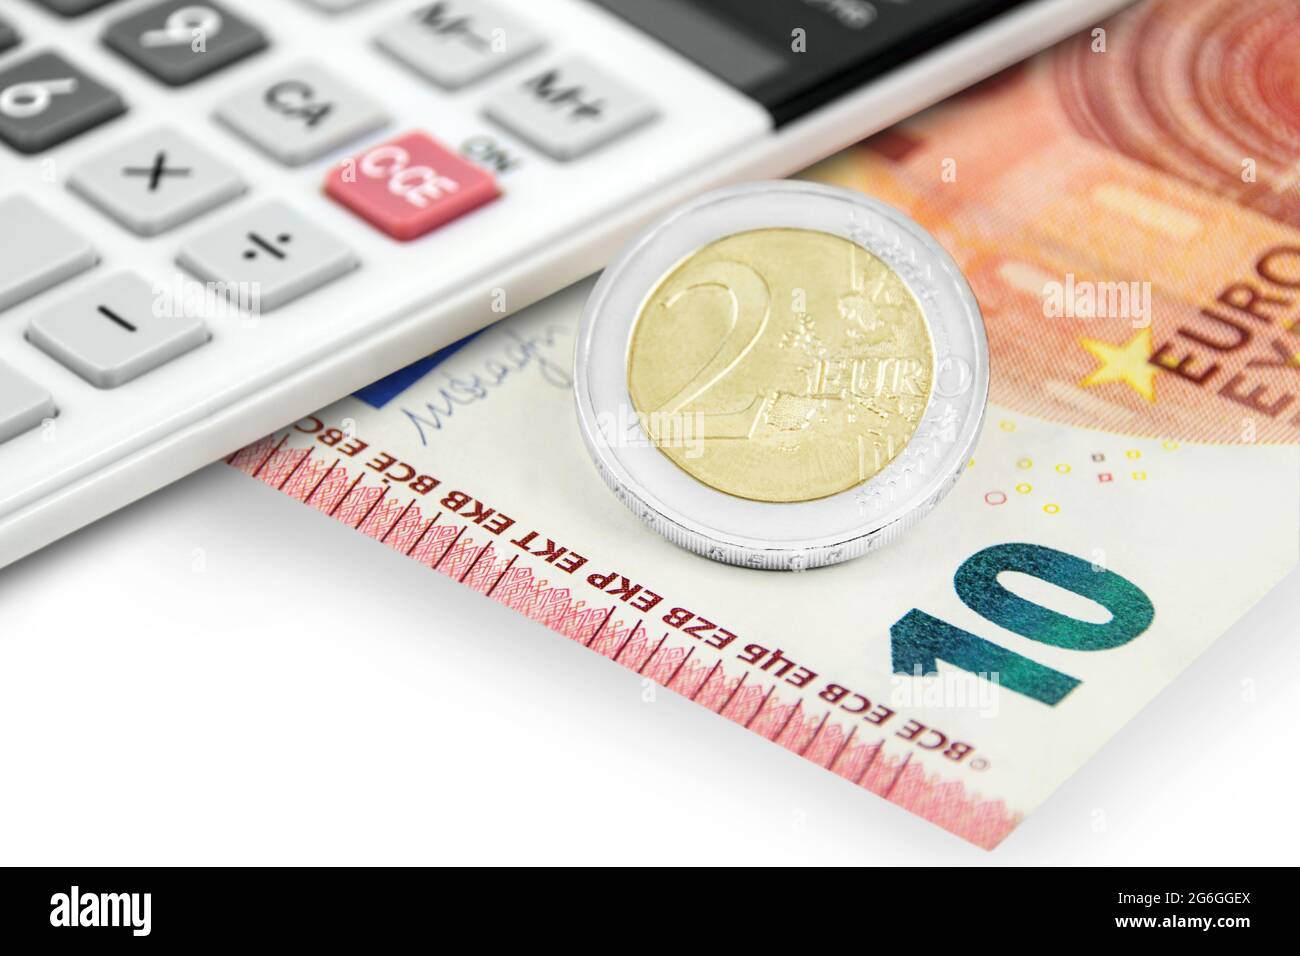 Rechner und 12,00 Euro auf weissem Hintergrund Stock Photo